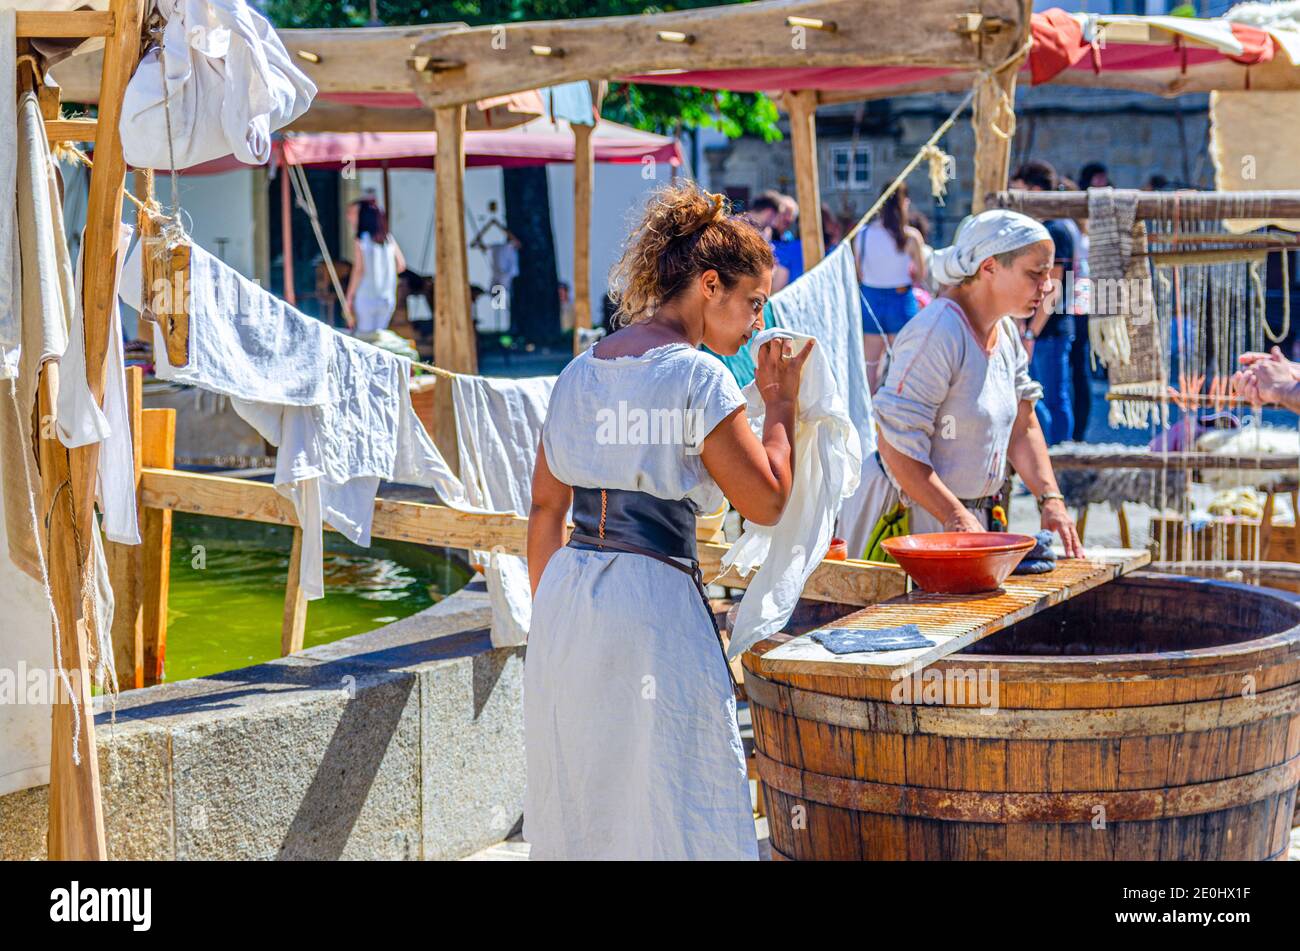 Guimaraes, Portugal, 24 juin 2017: Maîtresse vérifiant le linge de maison, femme de ménage dans les vieux vêtements traditionnels près du canon en bois dans le centre historique, scène médiévale pendant la fête de la ville Banque D'Images